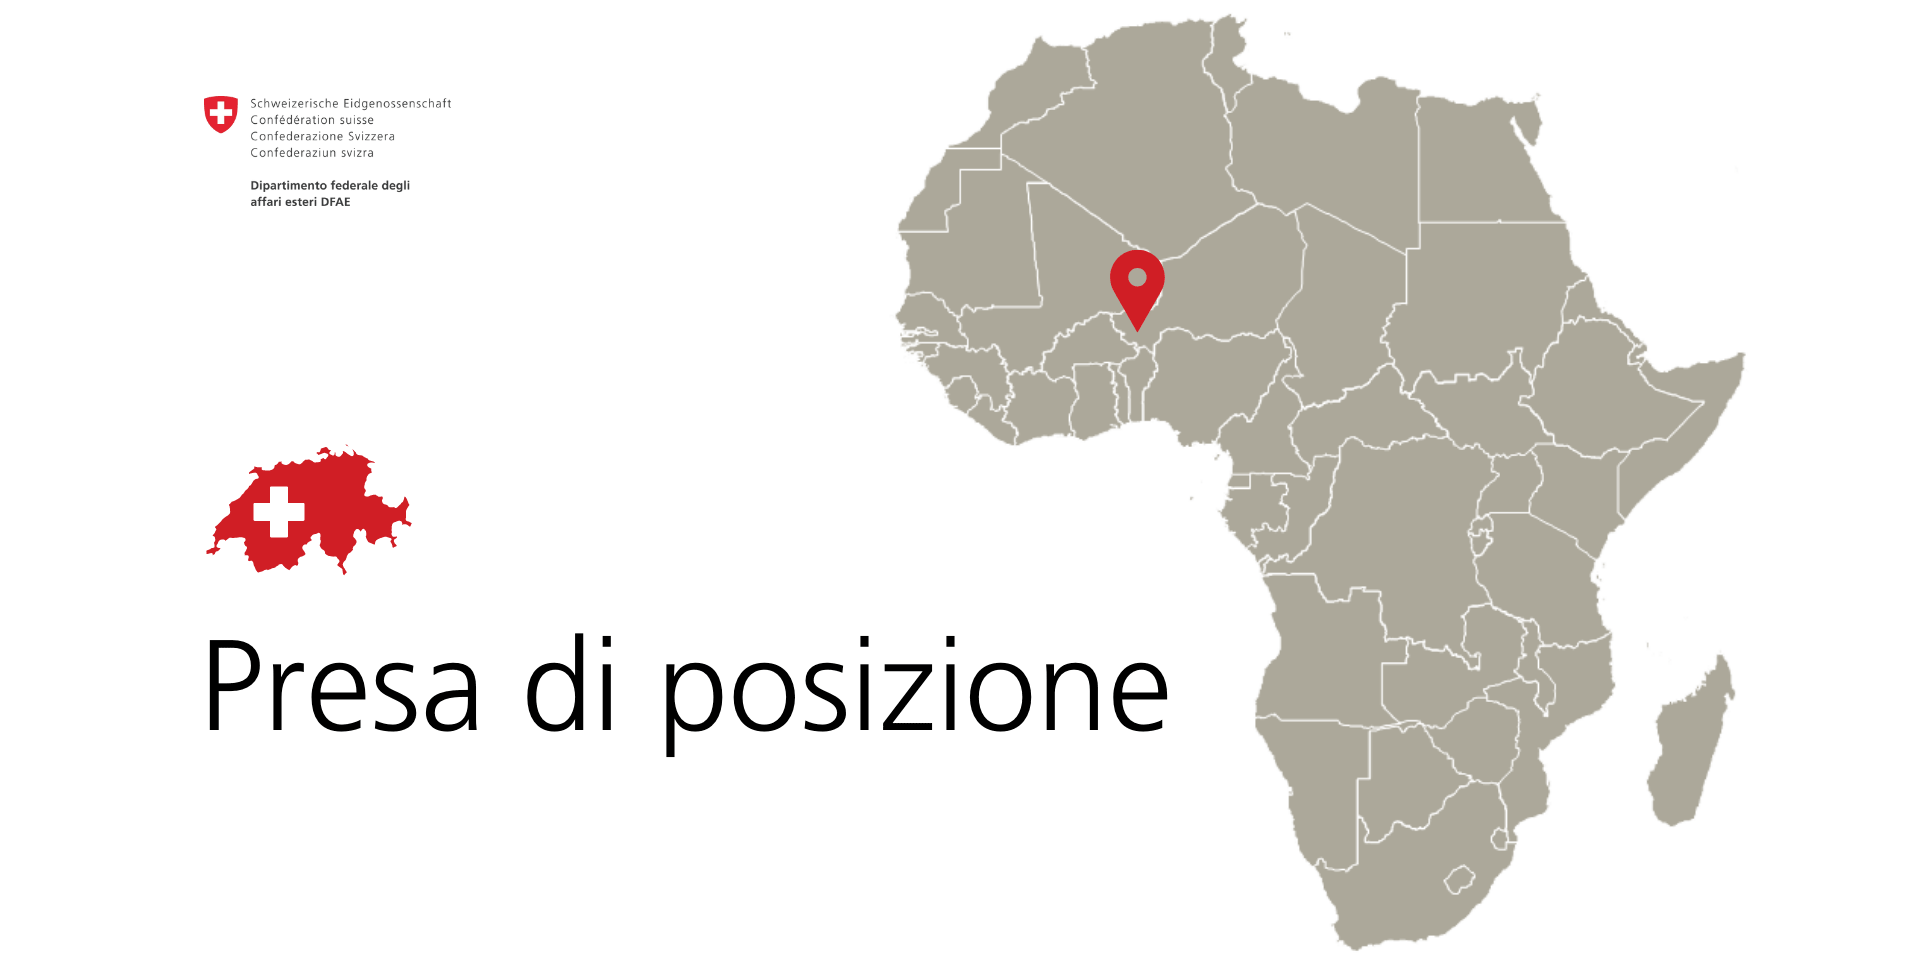 La cartina dell’Africa in cui è evidenziata la posizione del Niger.